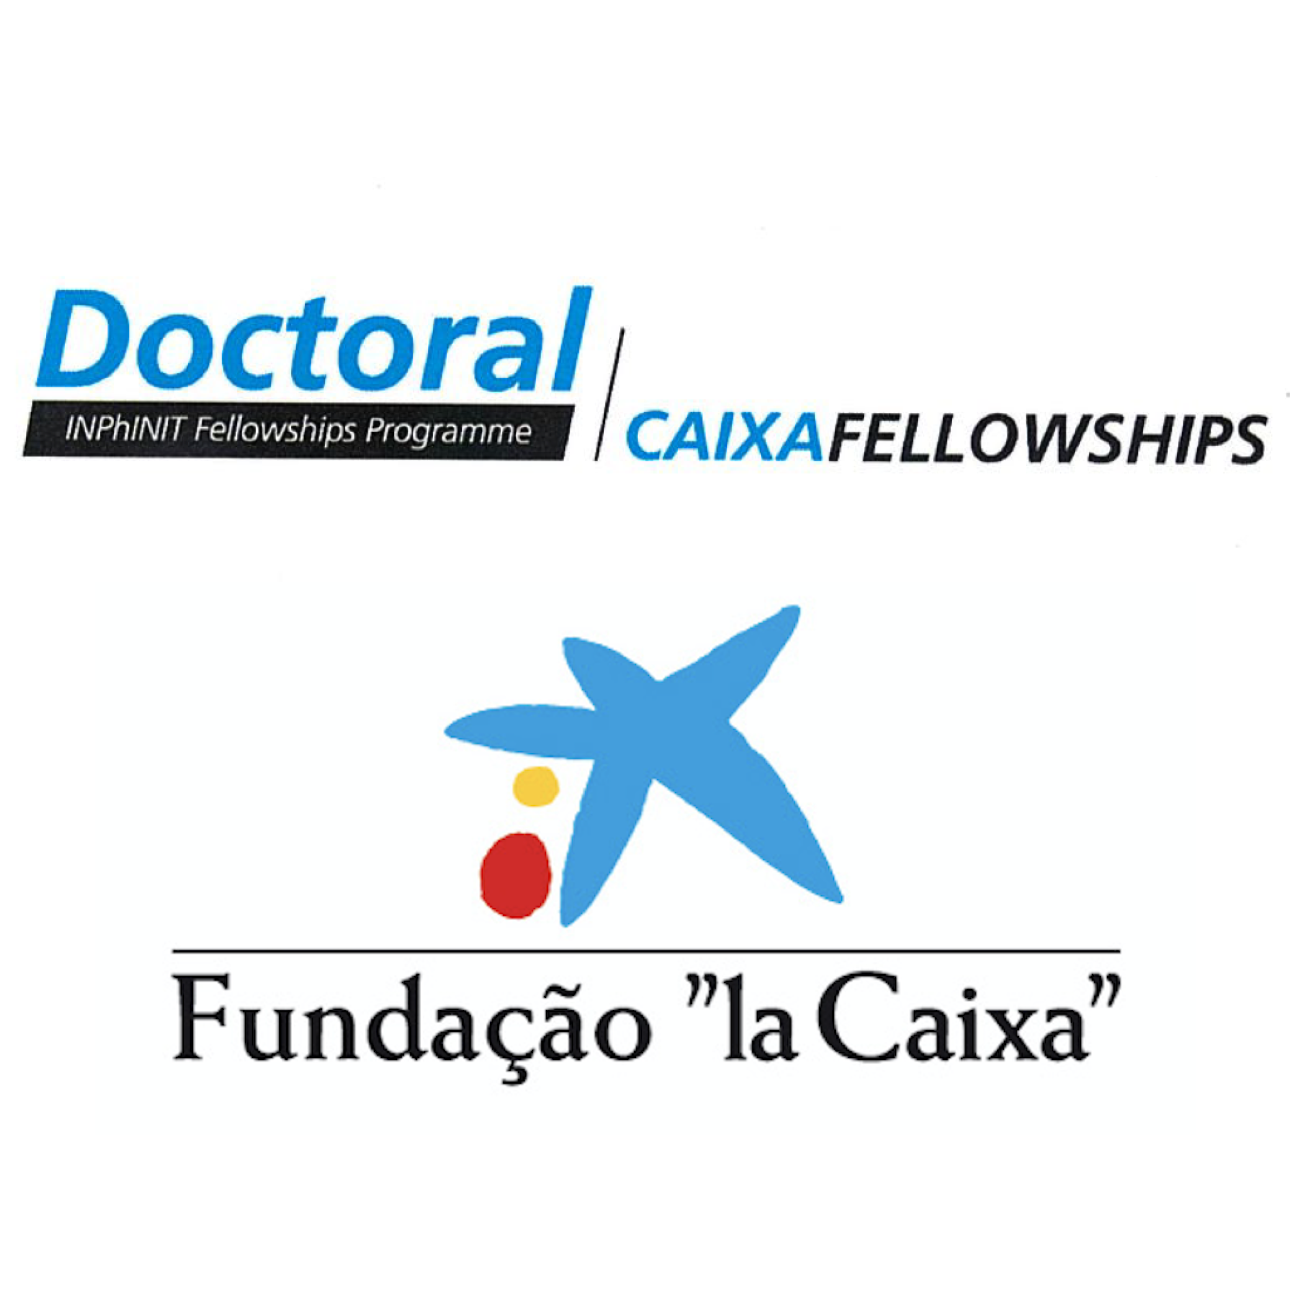 Caixa fellowships